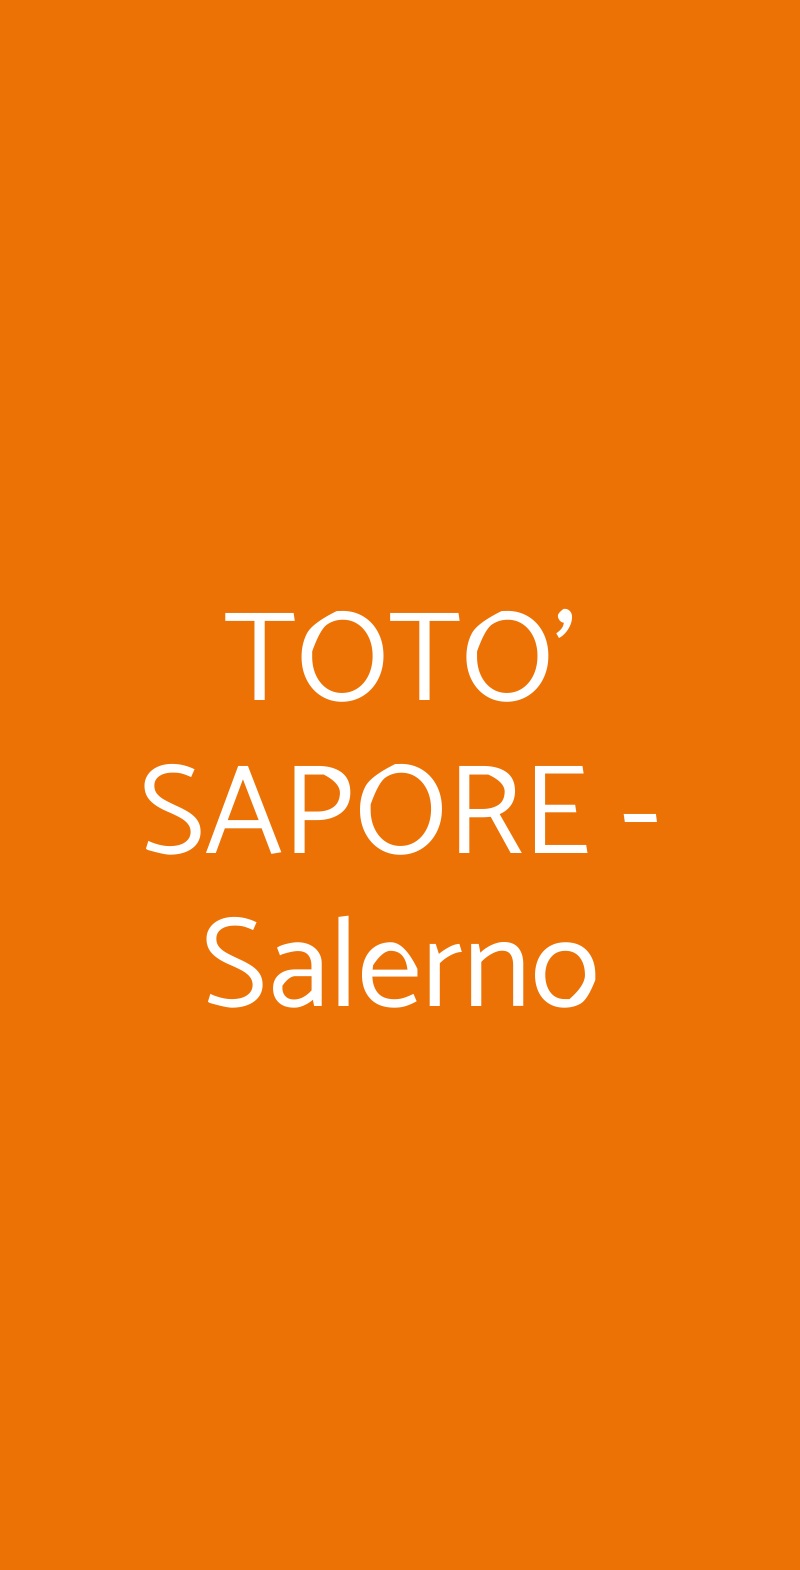 TOTO' SAPORE  Salerno menù 1 pagina